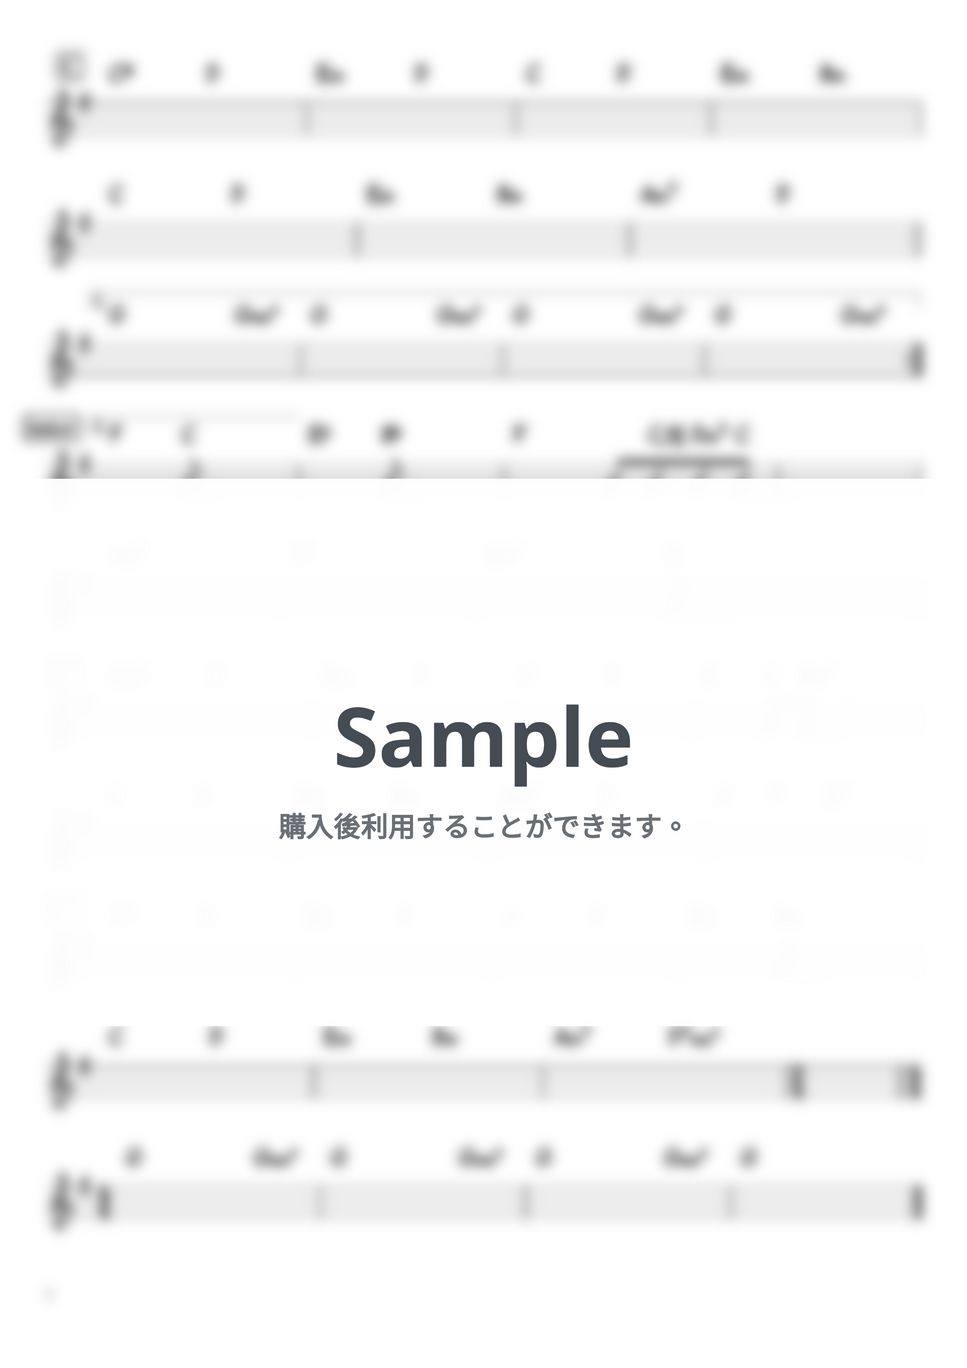 レミオロメン - 粉雪 (バンド用コード譜) by 箱譜屋